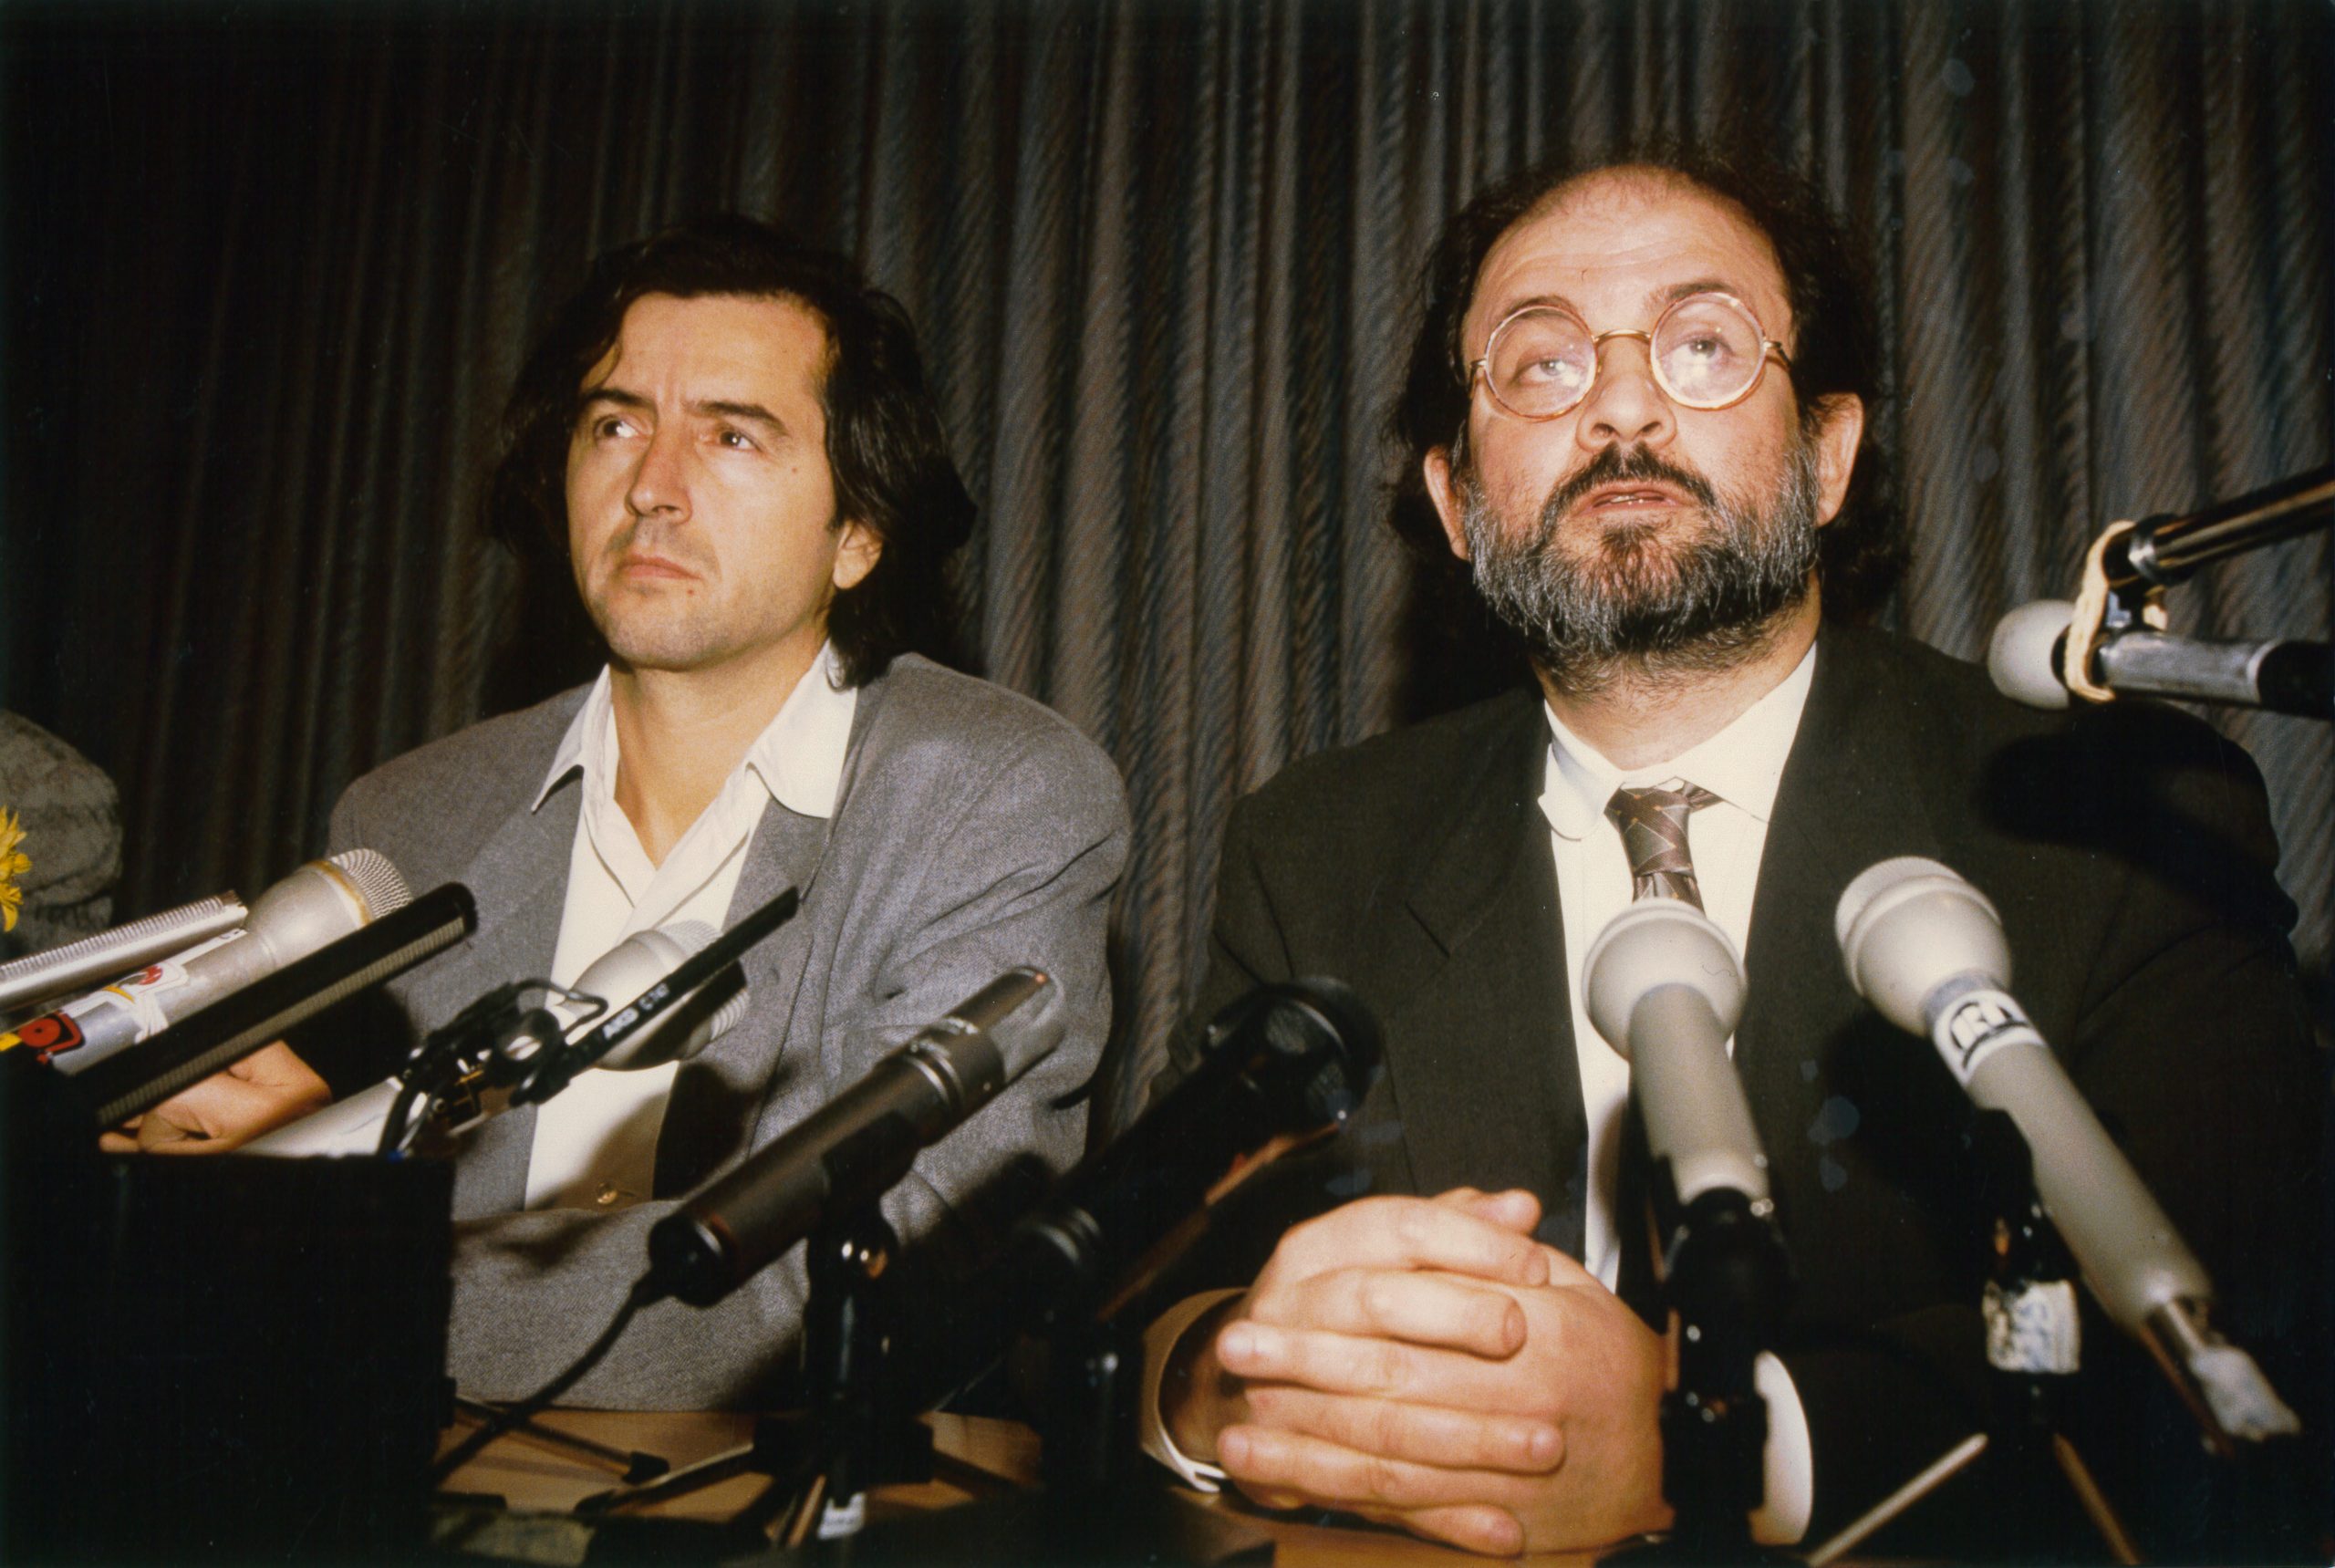 Bernard-Henri Lévy et Salman Rushdie assis derrière des micros posés sur une table.